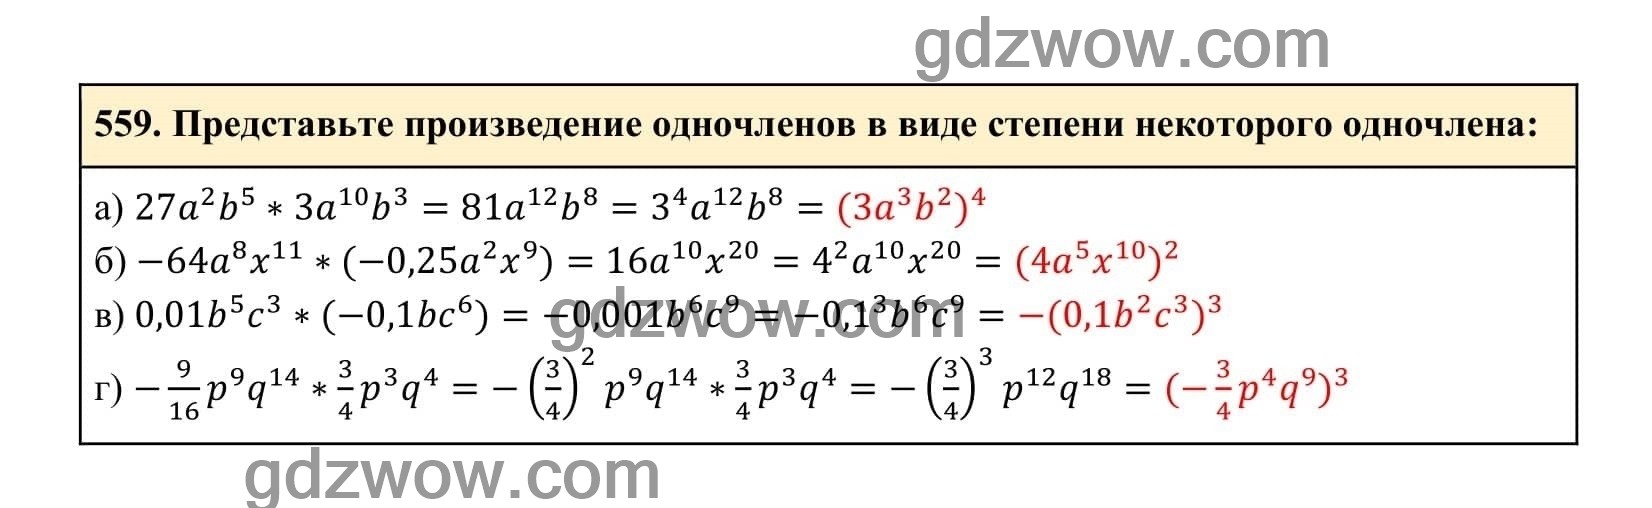 Упражнение 559 - ГДЗ по Алгебре 7 класс Учебник Макарычев (решебник) - GDZwow